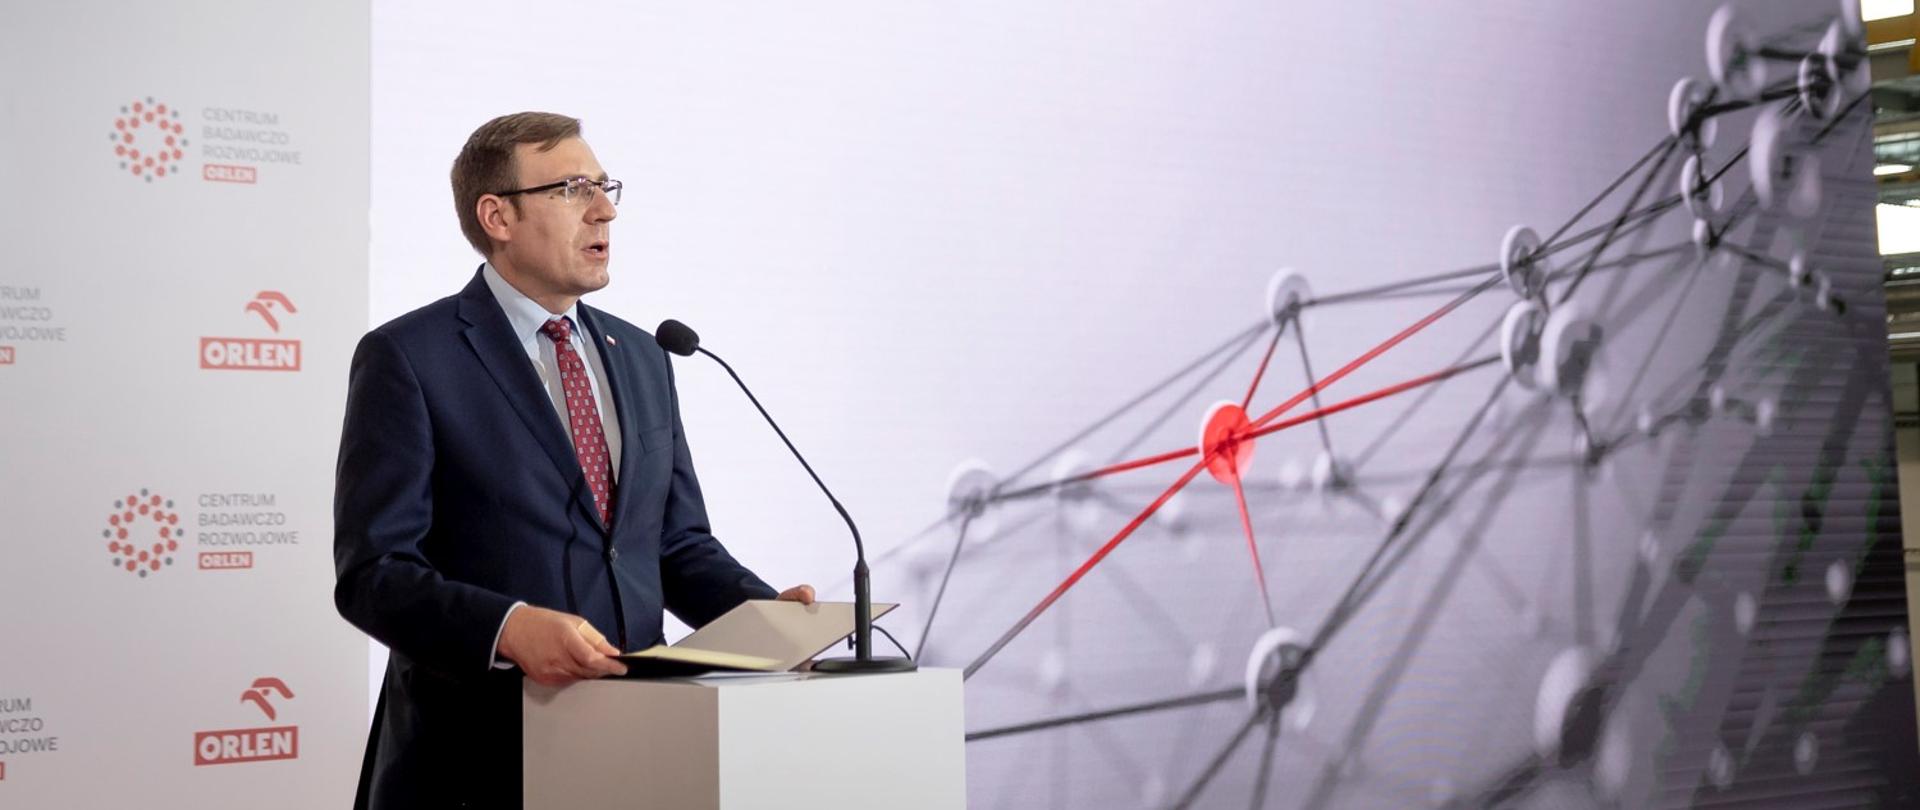 Wiceminister Maciej Małecki podczas uroczystości przemawia z mównicy. W tle ścianka z logo PKN Orlen